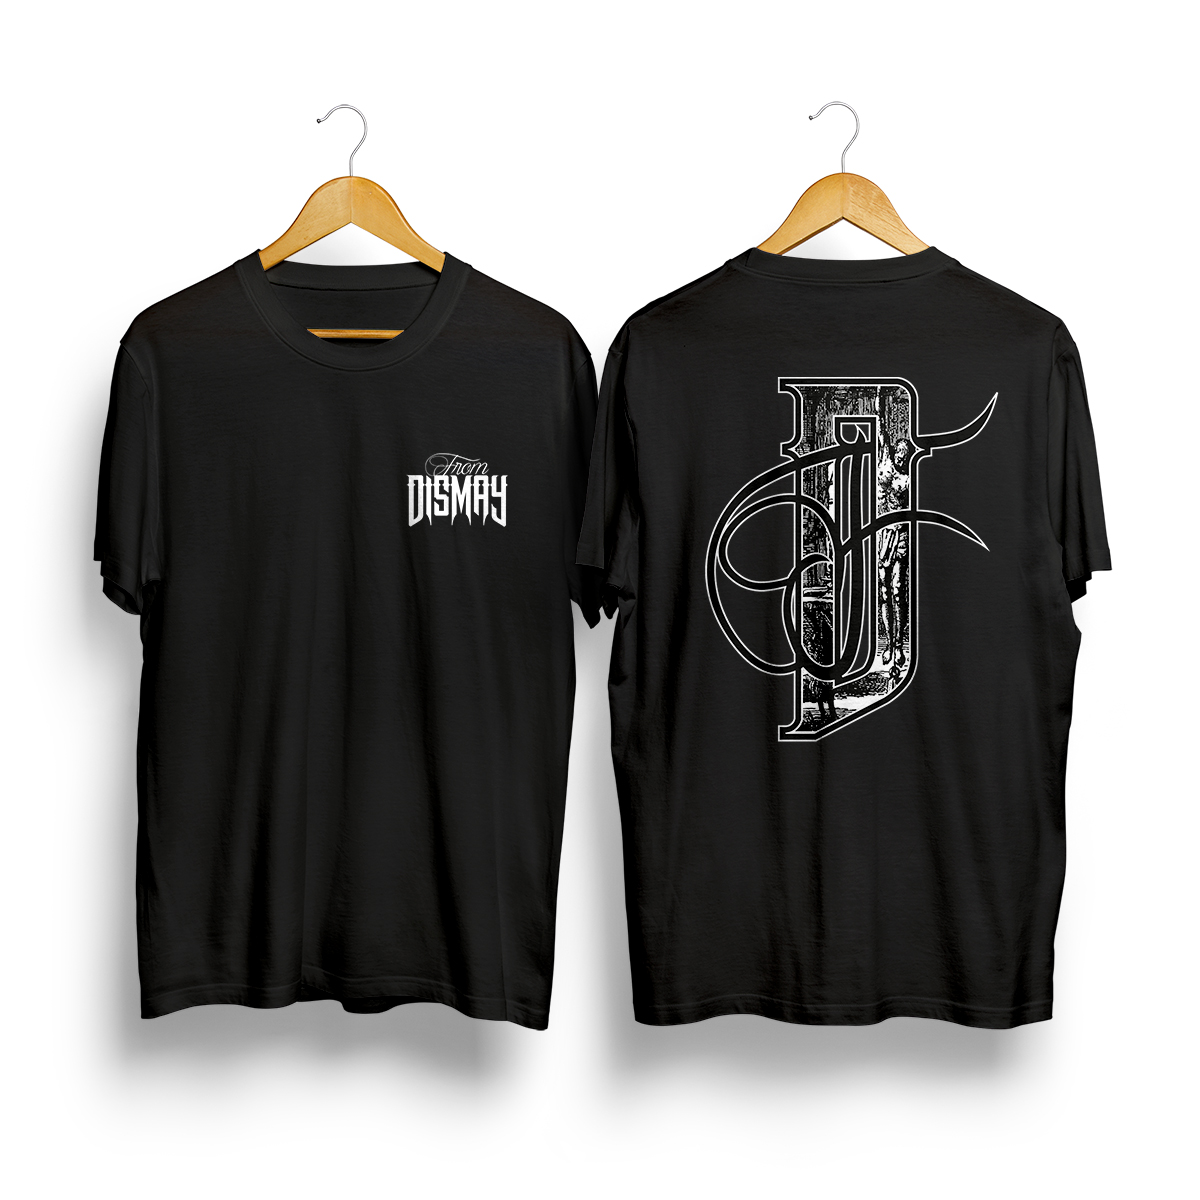 Création merchandising. T-shirt design pour groupe de musique metal